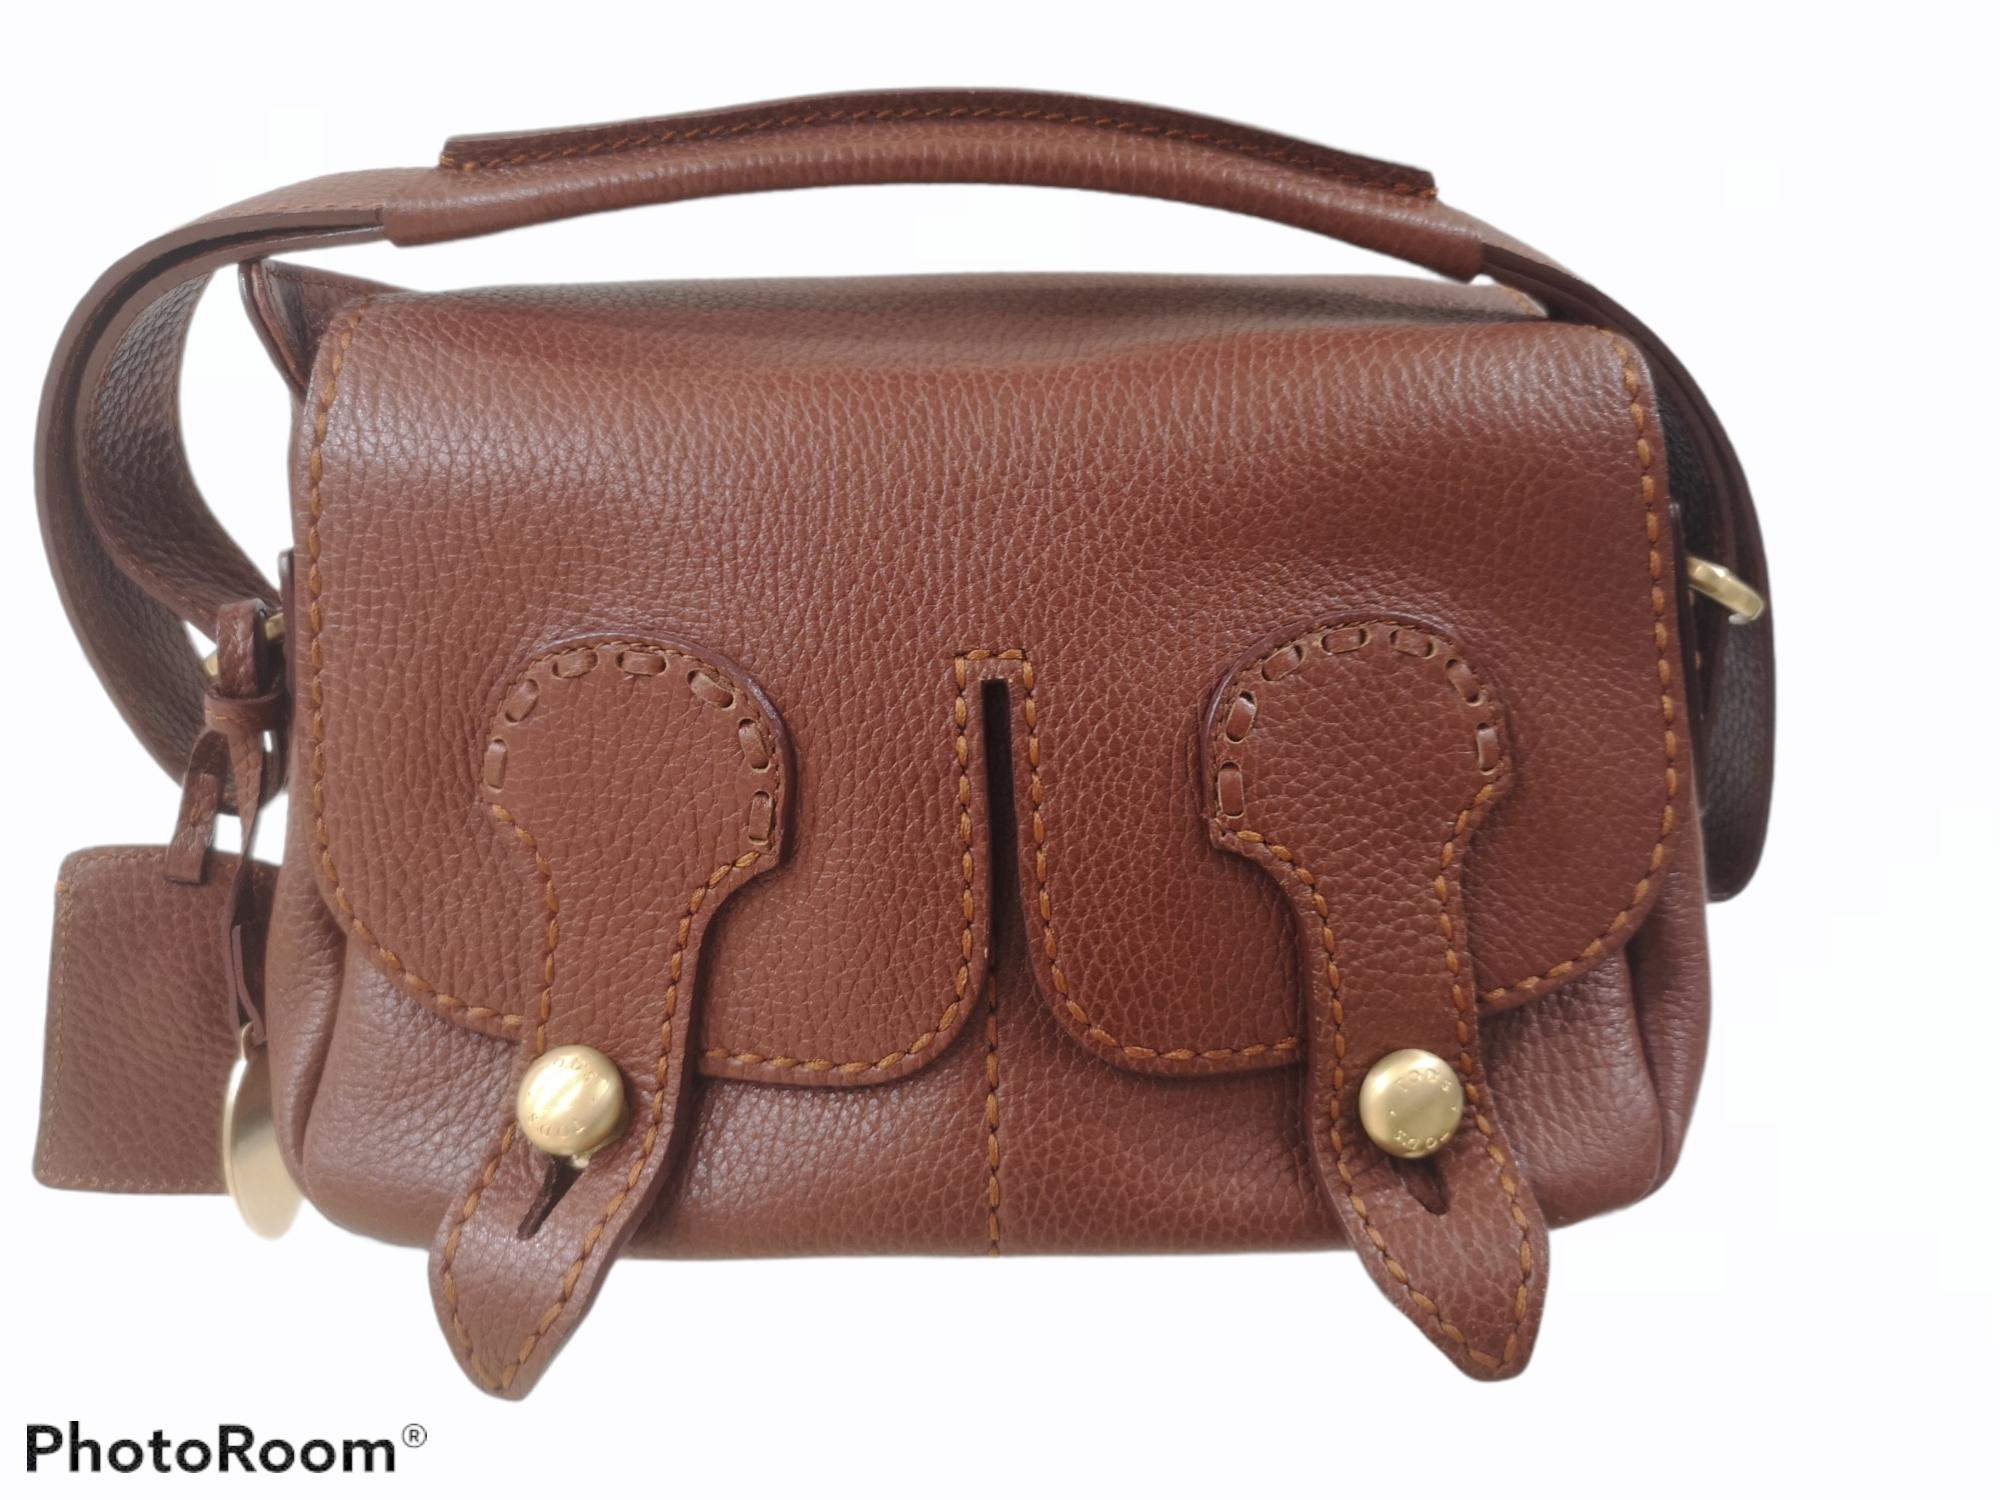 Tod's brown leather gold tone hardware shoulder bag
measurements: 14 * 26 cm, 11 cm depth